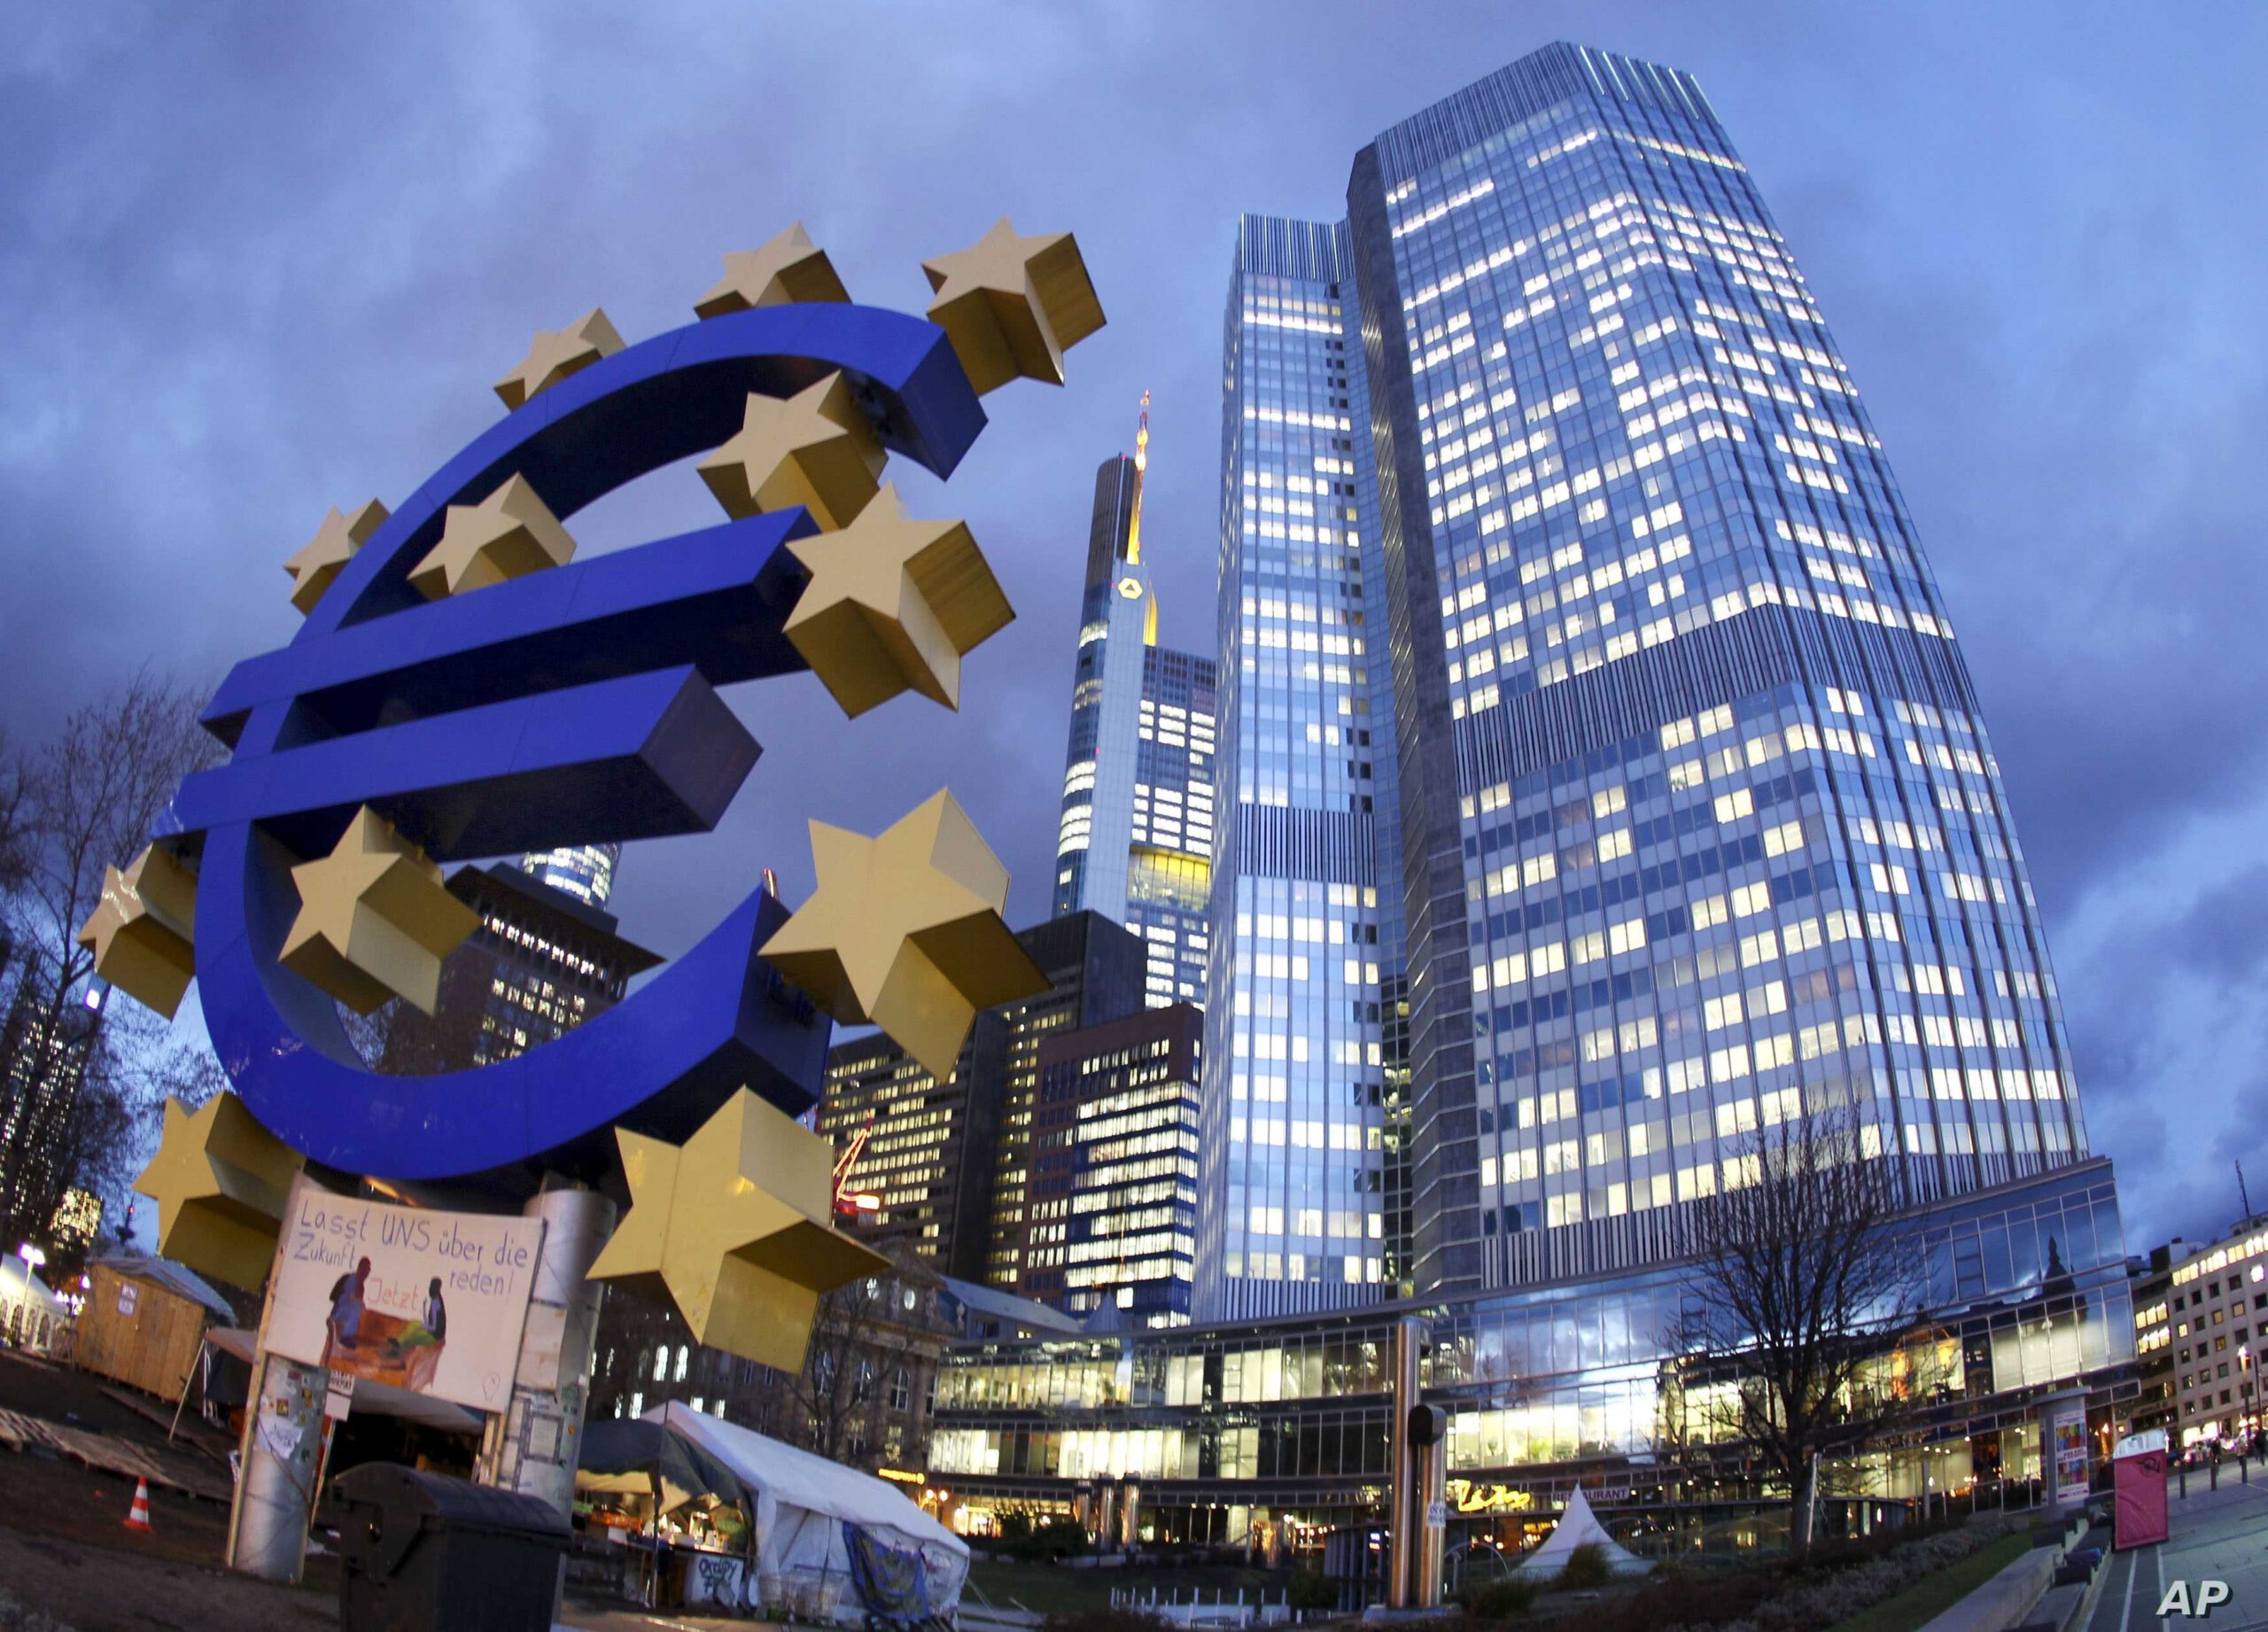 آشنایی با سازوکار بانک مرکزی اروپا (ECB)